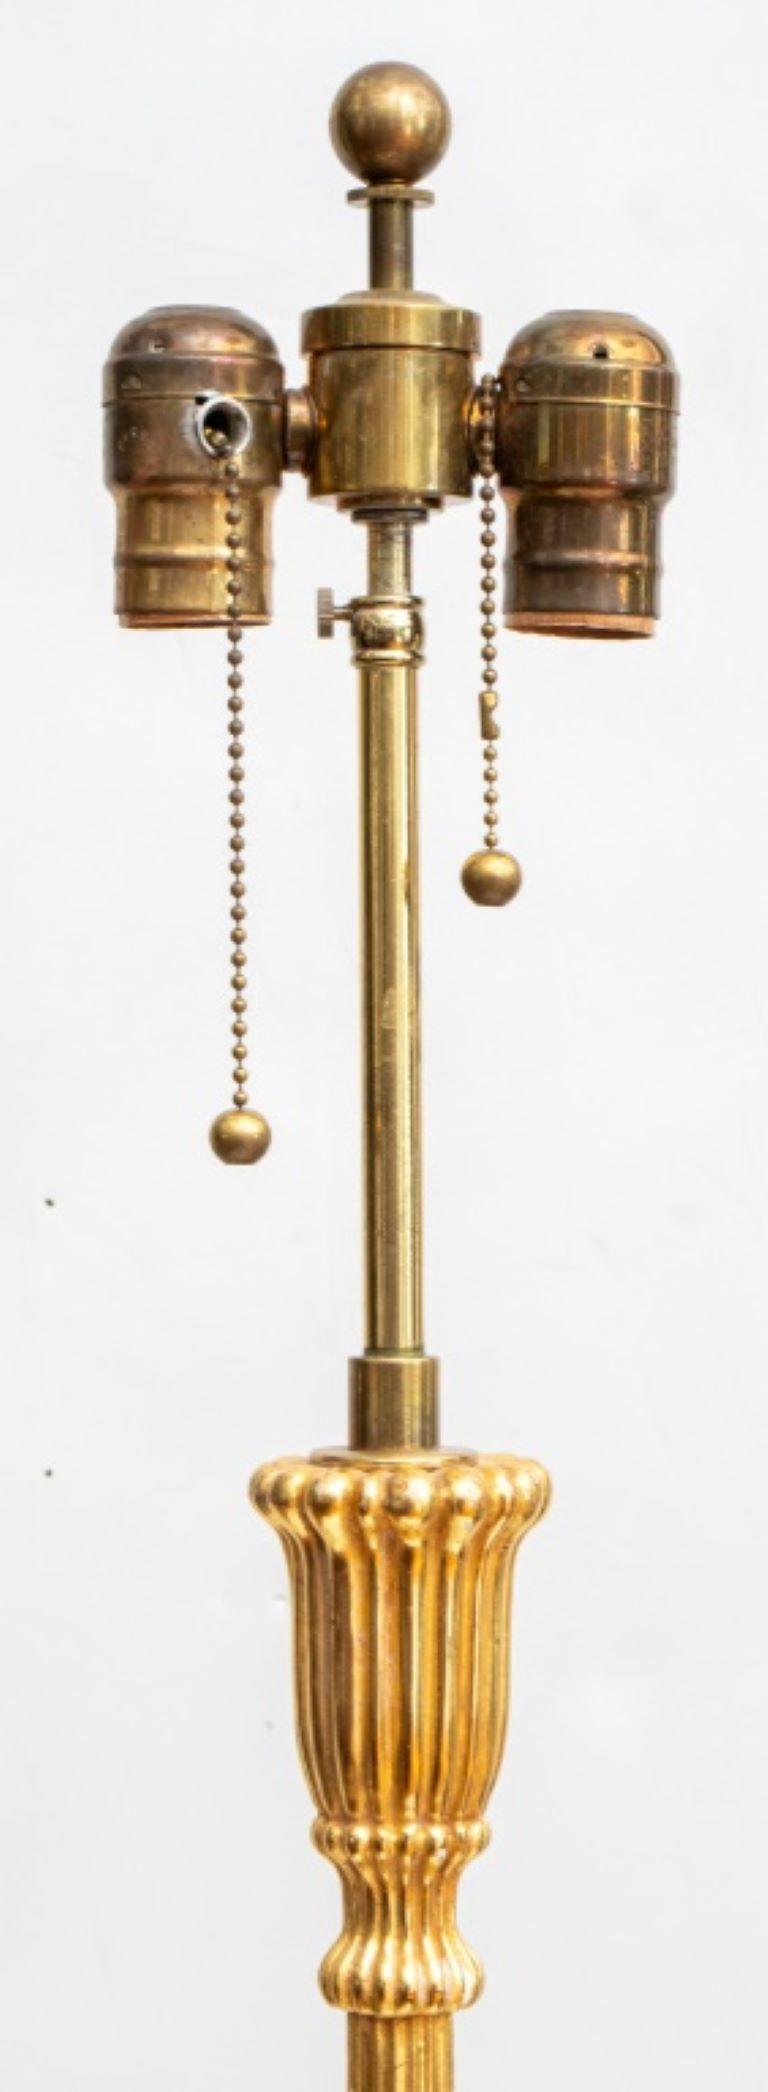 Paire de lampadaires en composition dorée de style néoclassique, fin du 20e siècle.

Concessionnaire : S138XX